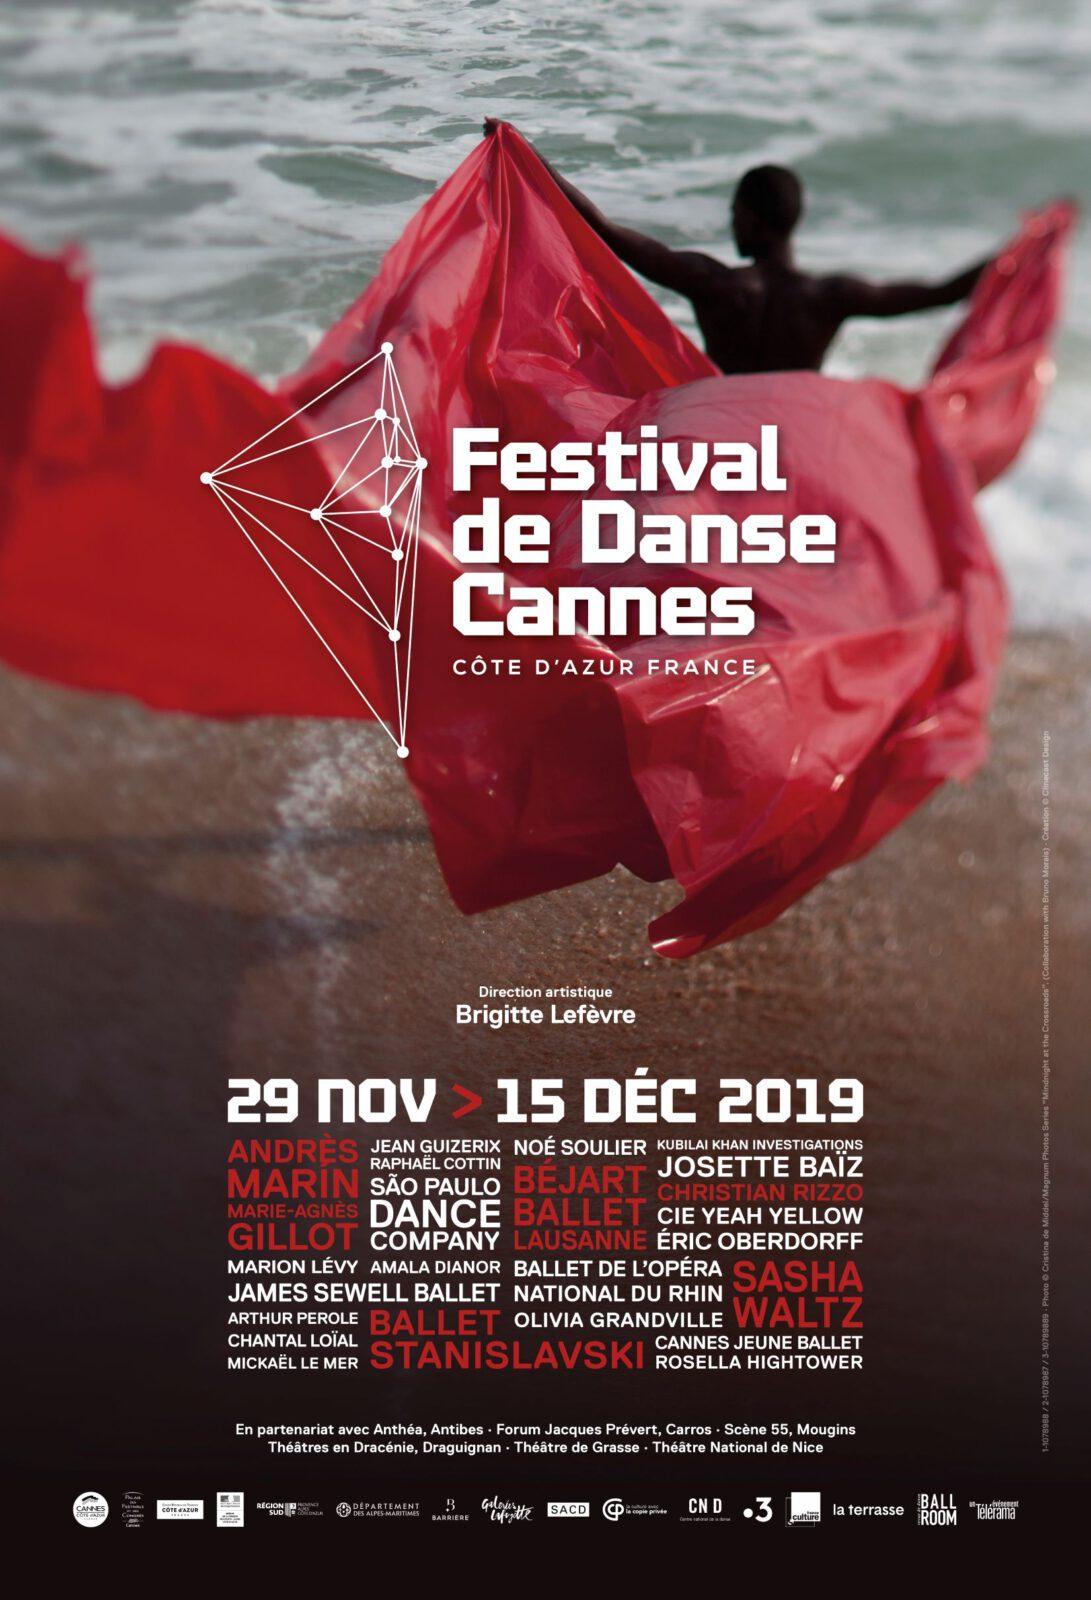 Cannes Festival de Danse 2019